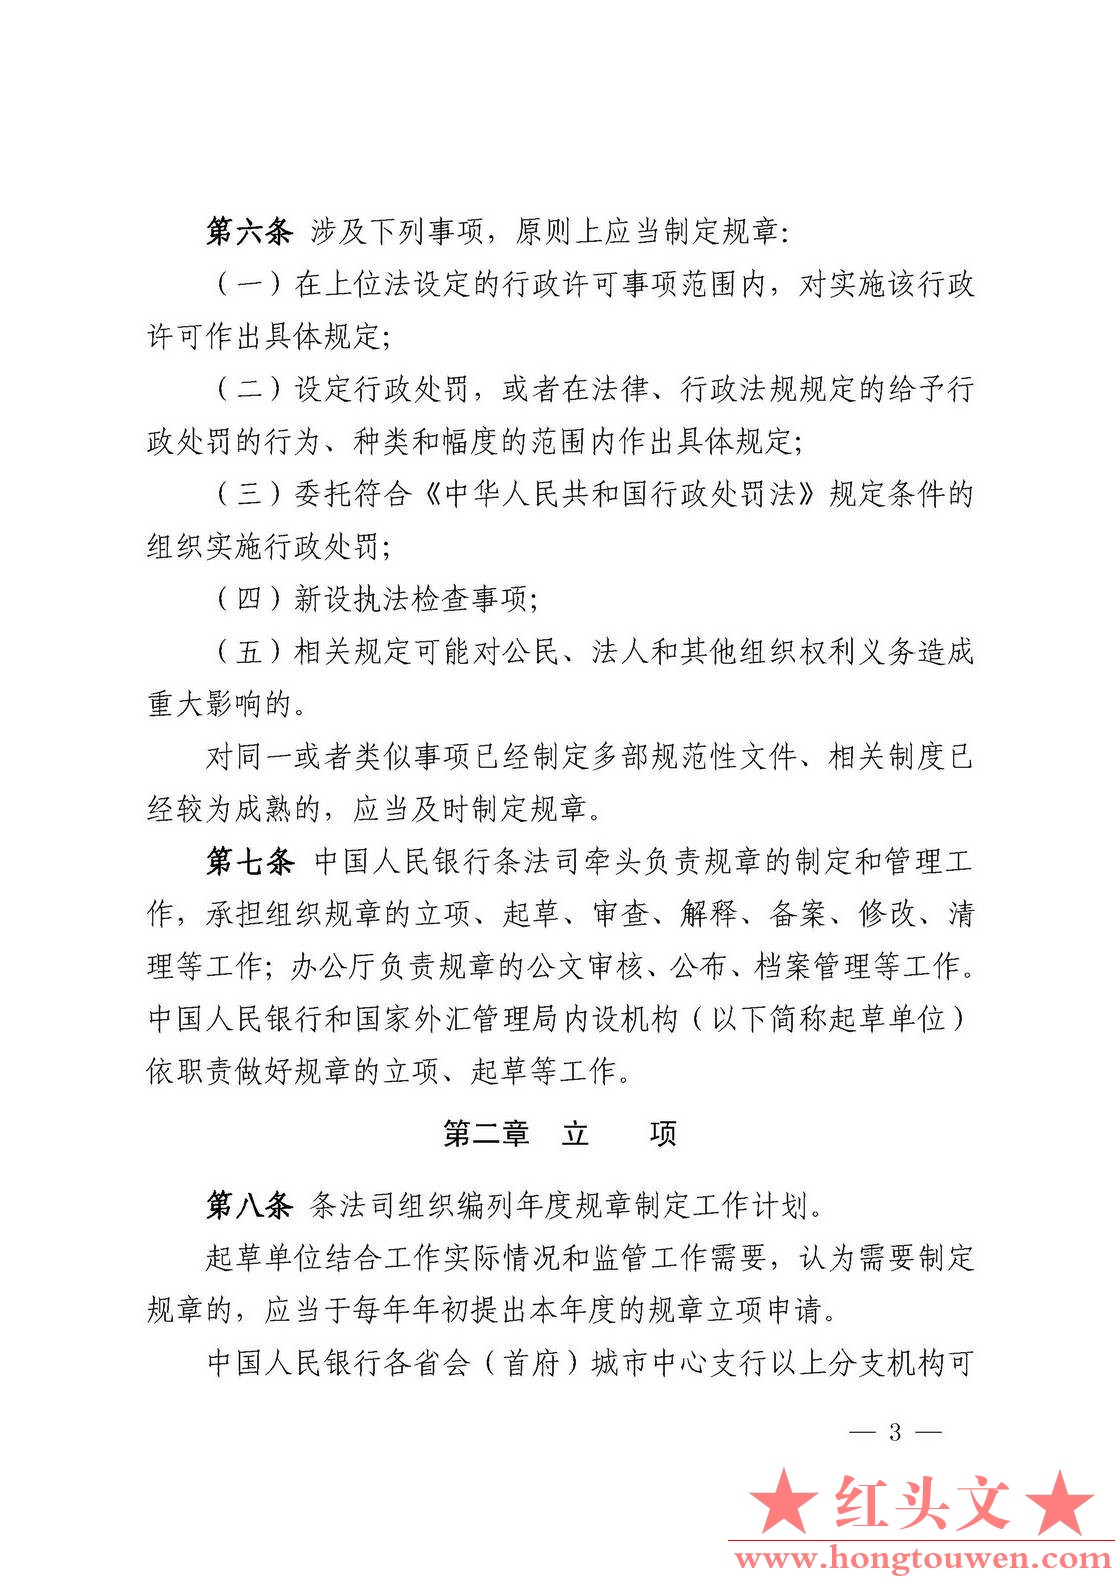 中国人民银行令[2018]3号-中国人民银行规章制定程序与管理规定_页面_03.jpg.jpg